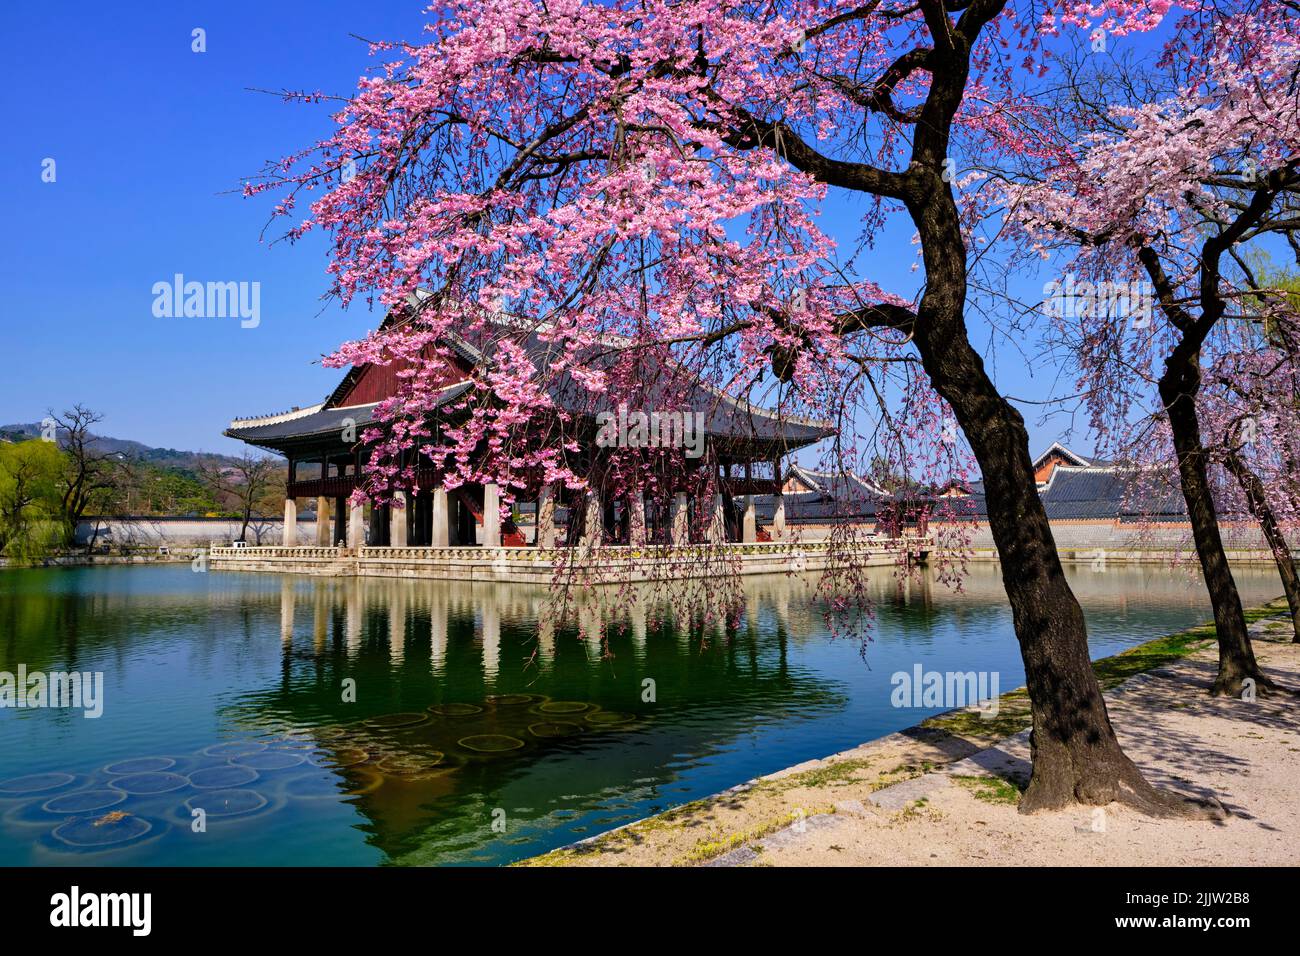 Corea del Sur, Seúl, distrito Jongno-gu, Palacio Gyeongbokgung o Palacio Gyeongbok que significa Palacio de la felicidad resplandeciente, flores de cerezos Foto de stock